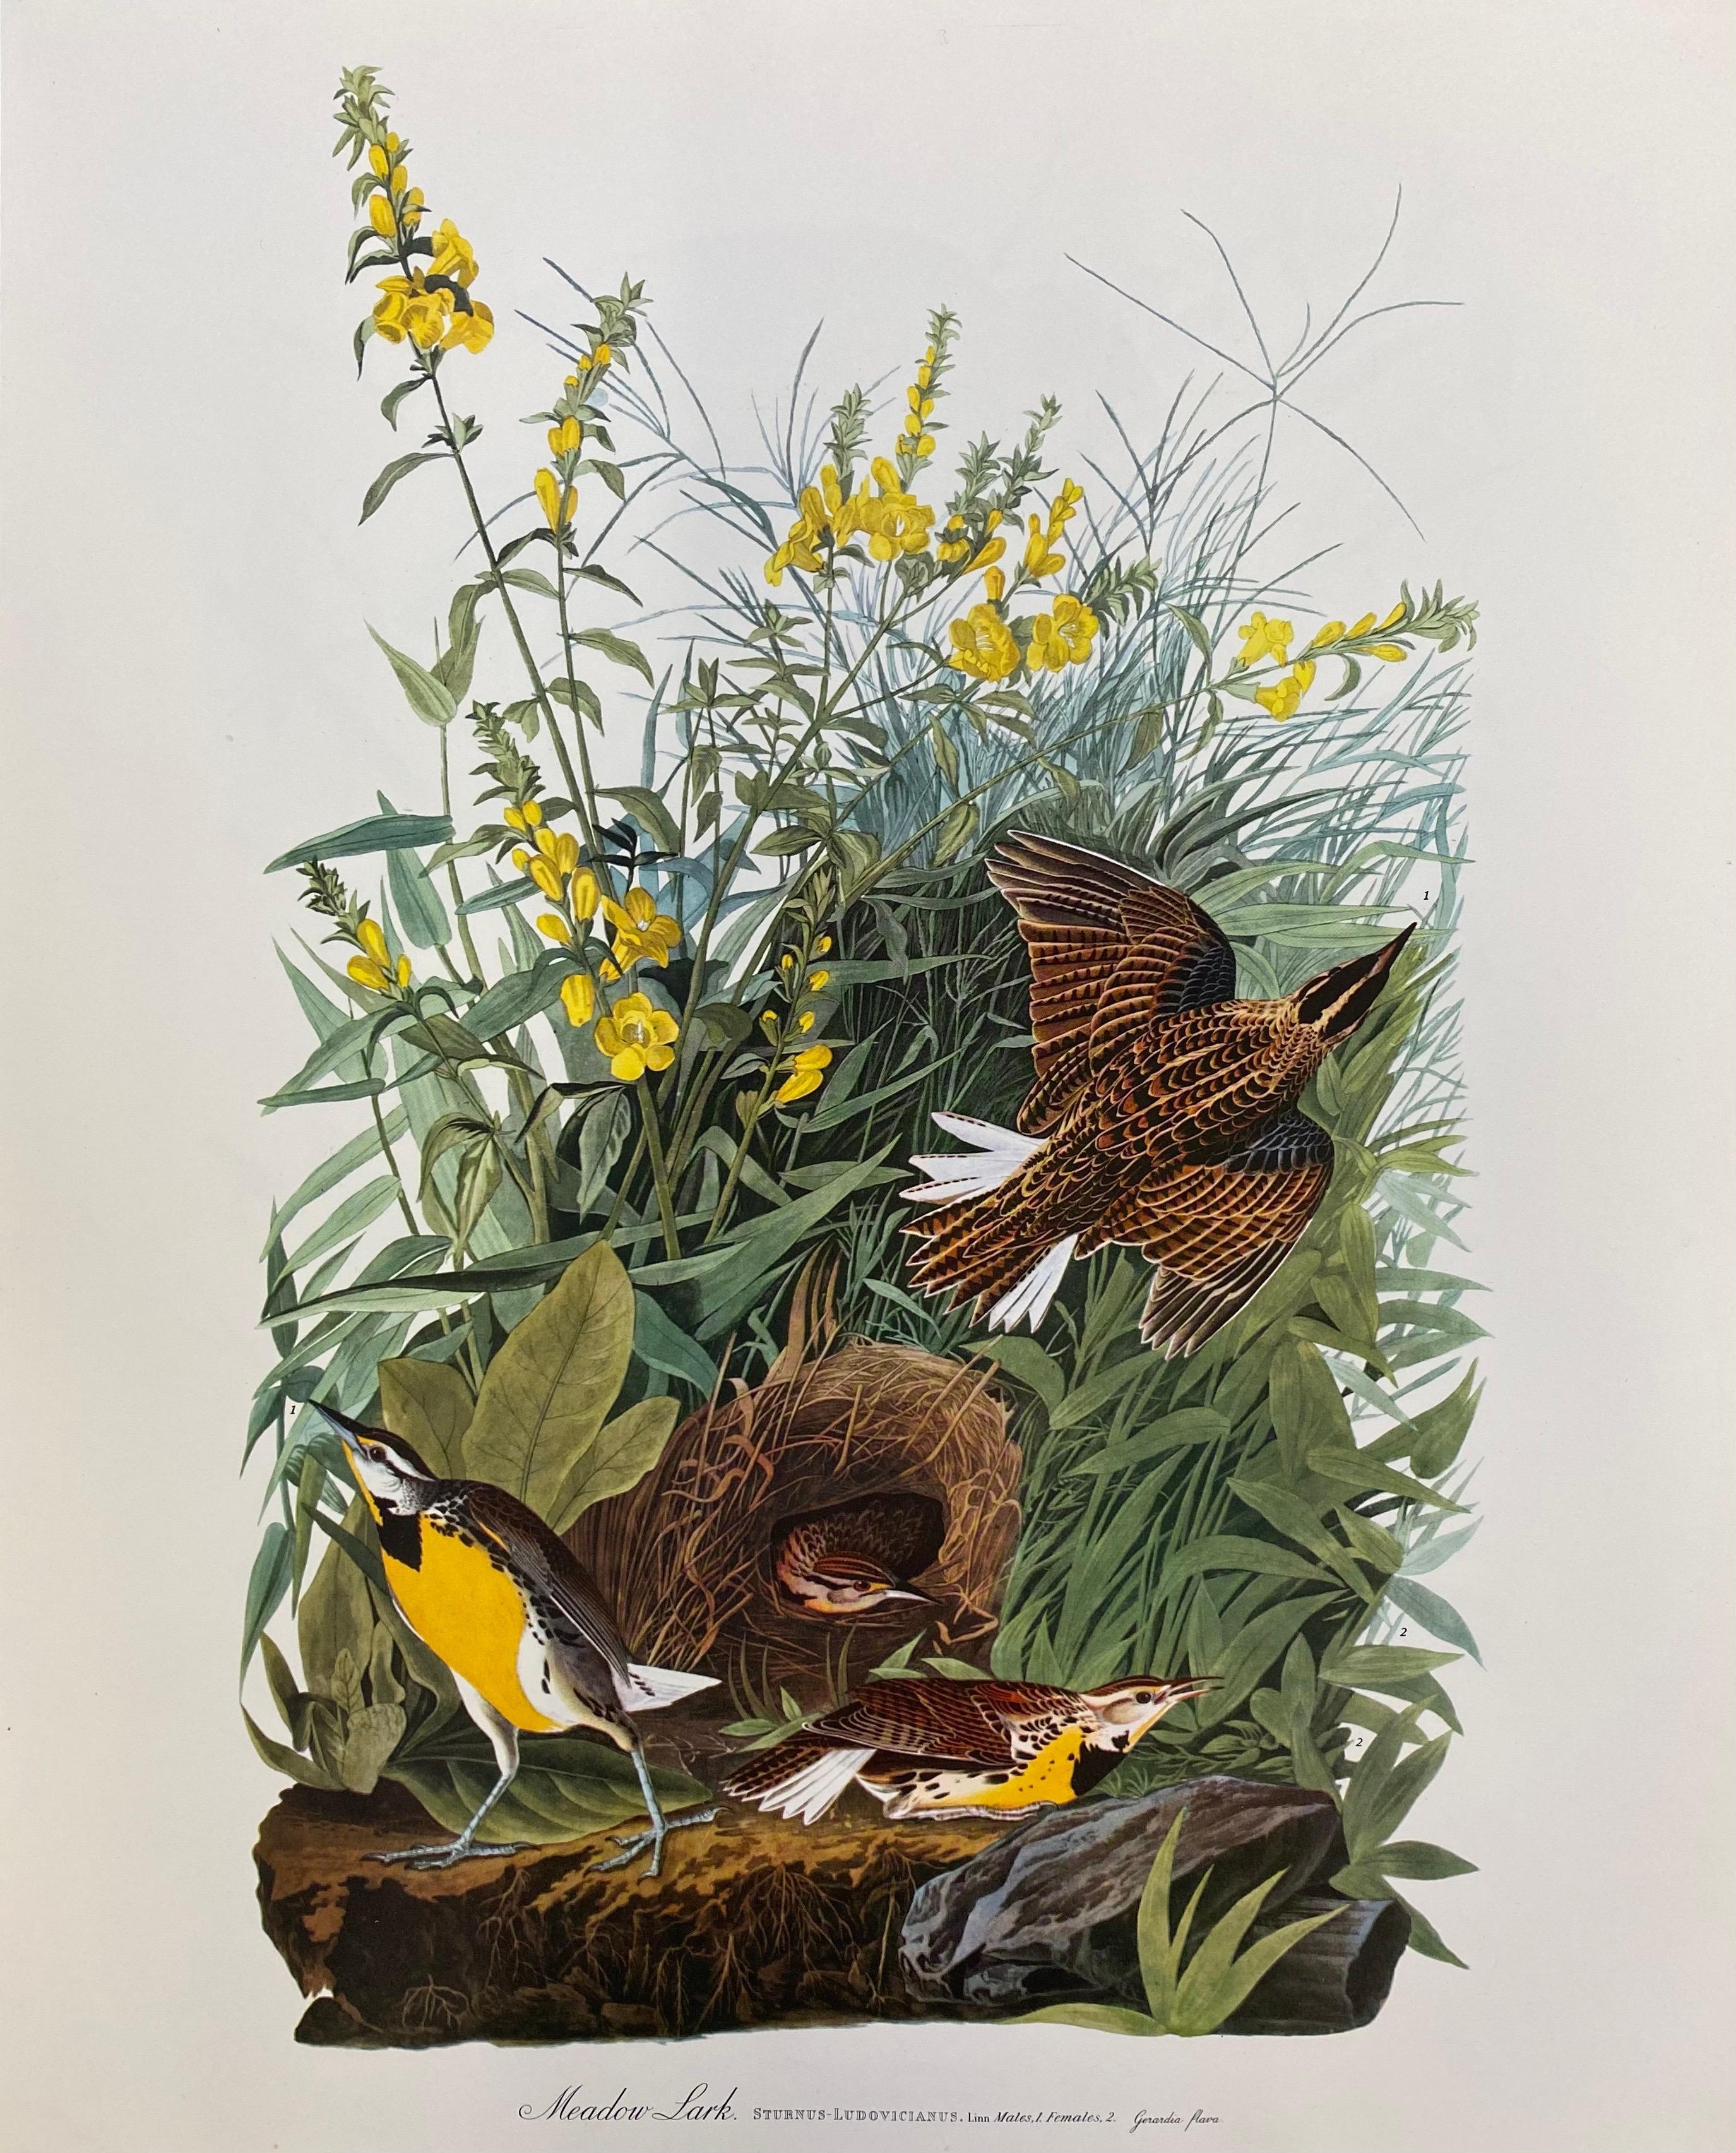 Impression d'oiseau classique, 
d'après John James Audubon, 
imprimé par Harry N. Abrams, Publishers, New York
non encadré, 17 x 14 pouces impression couleur sur papier
état : très bon
provenance : d'un collectionneur privé ici au Royaume-Uni.